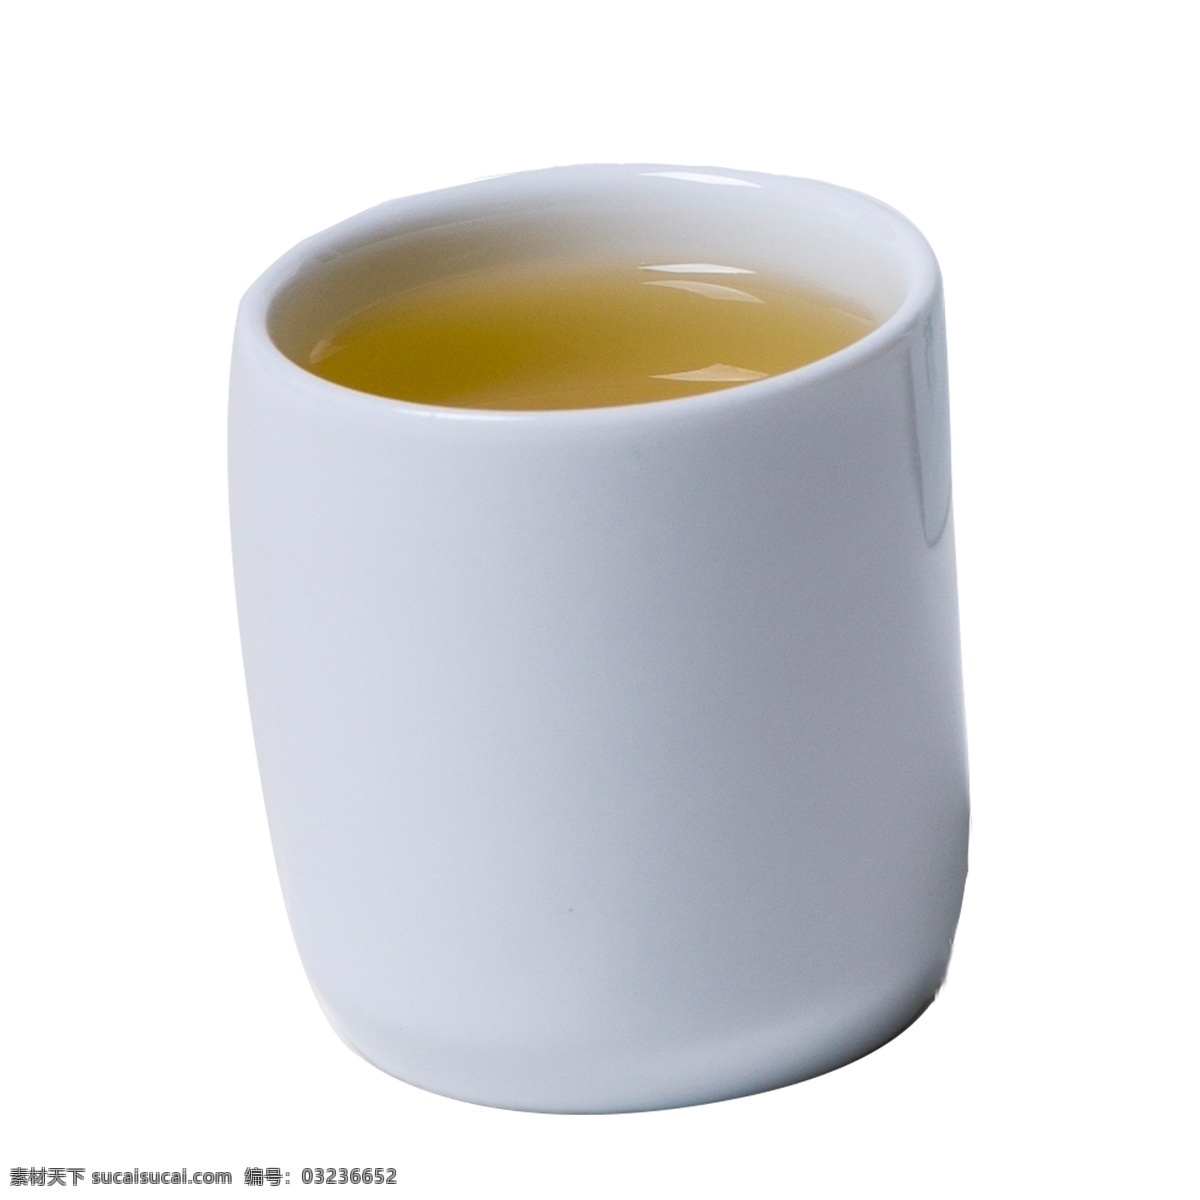 白色 真实 质感 水杯 元素 水果 杯子 陶瓷 水面 纹理 圆柱 喝水 茶水 创意 高光 圆润 液体 喝的